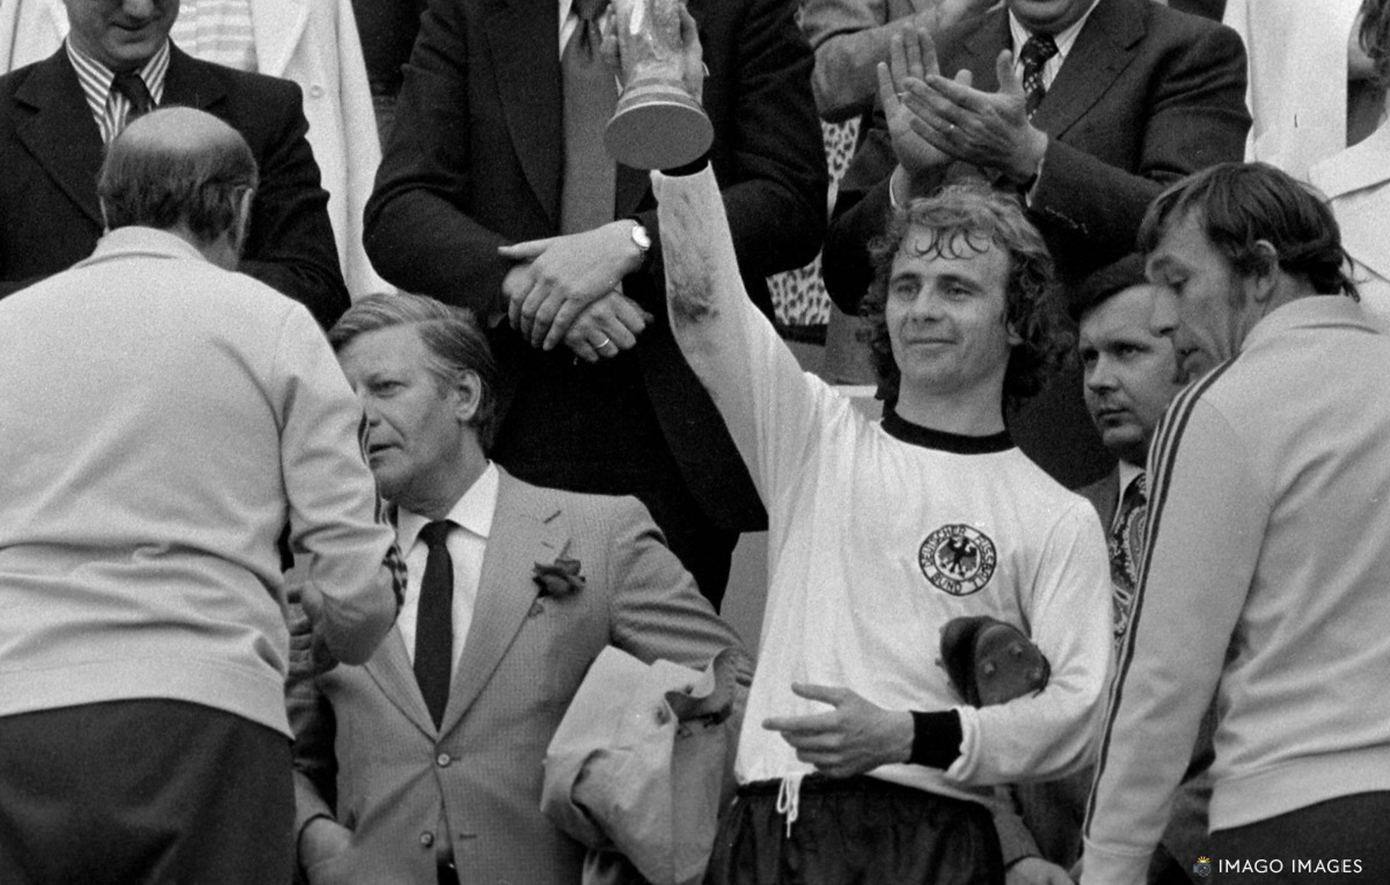 Μπερντ Χέλζενμπαϊν: Πέθανε ο Γερμανός παγκόσμιος πρωταθλητής του 1974